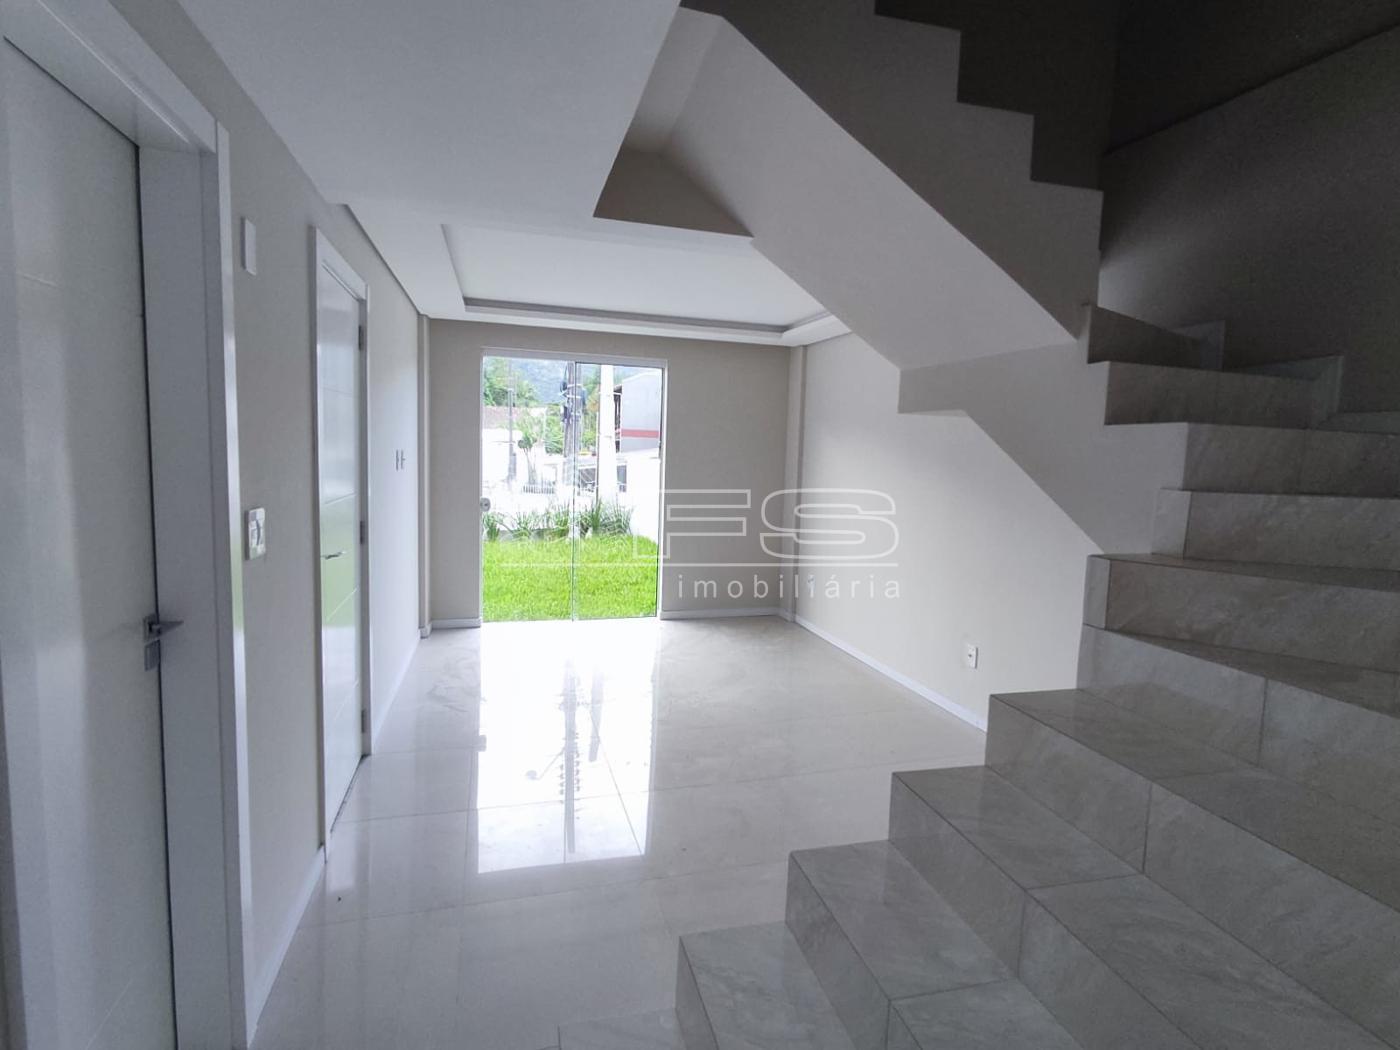 Casa com 3 Dormitórios à venda, 110 m² por R$ 645.000,00